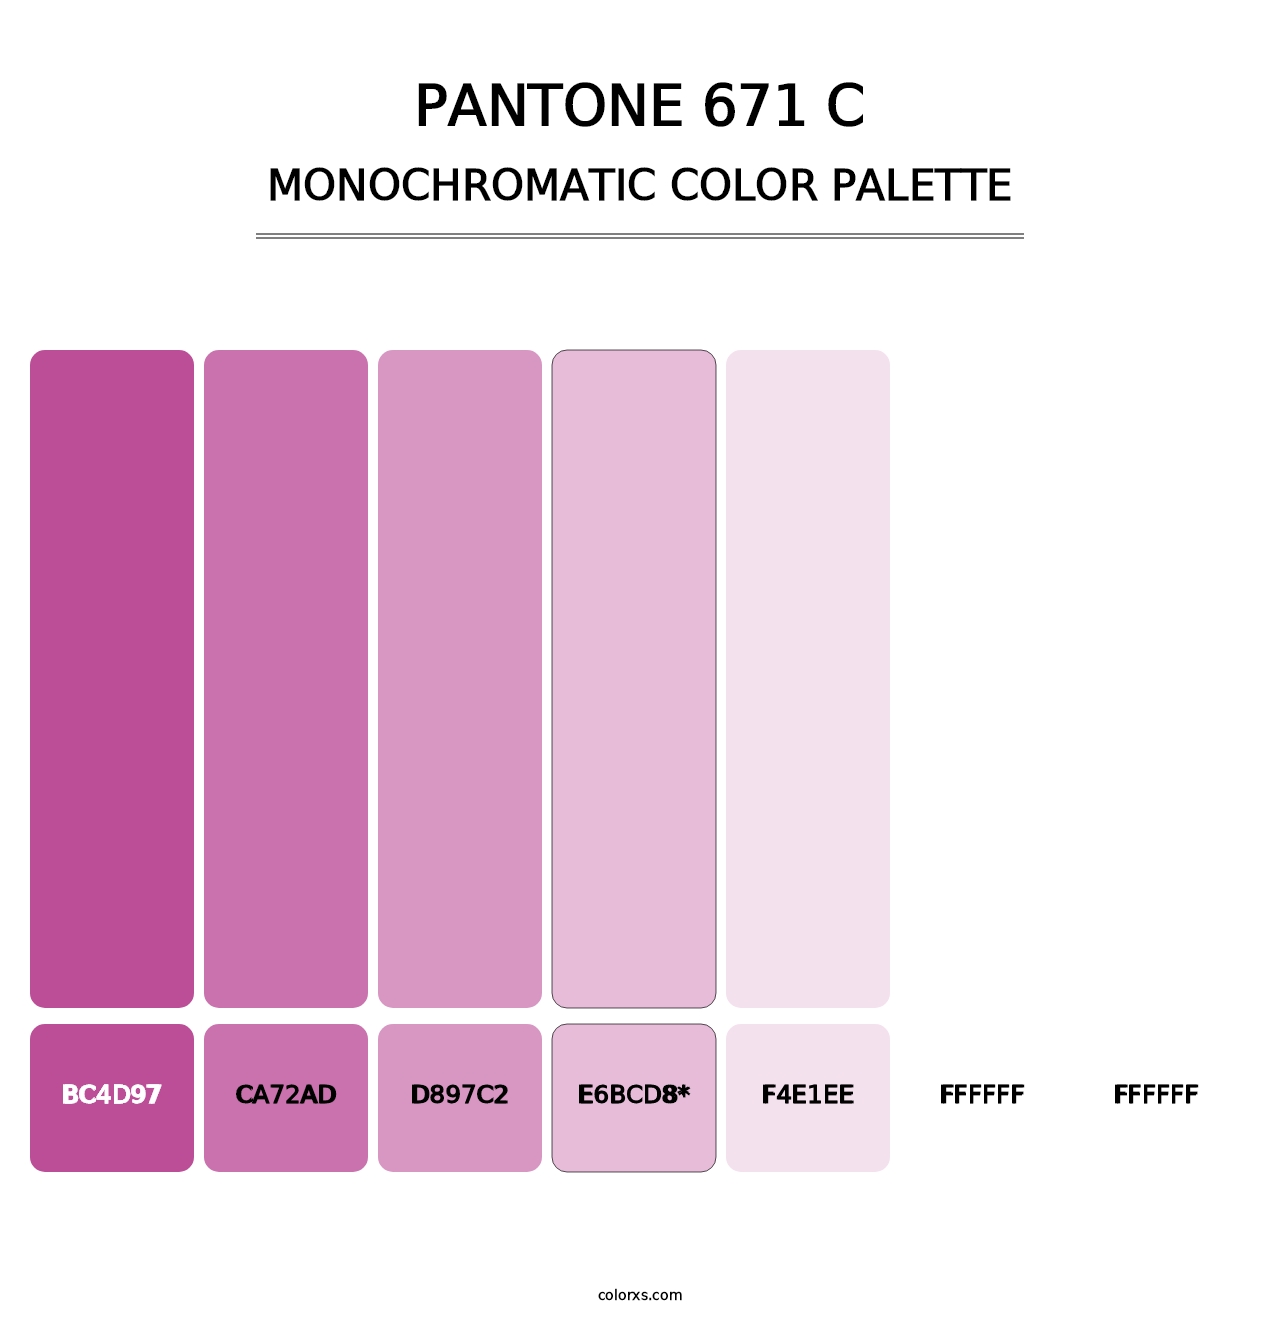 PANTONE 671 C - Monochromatic Color Palette